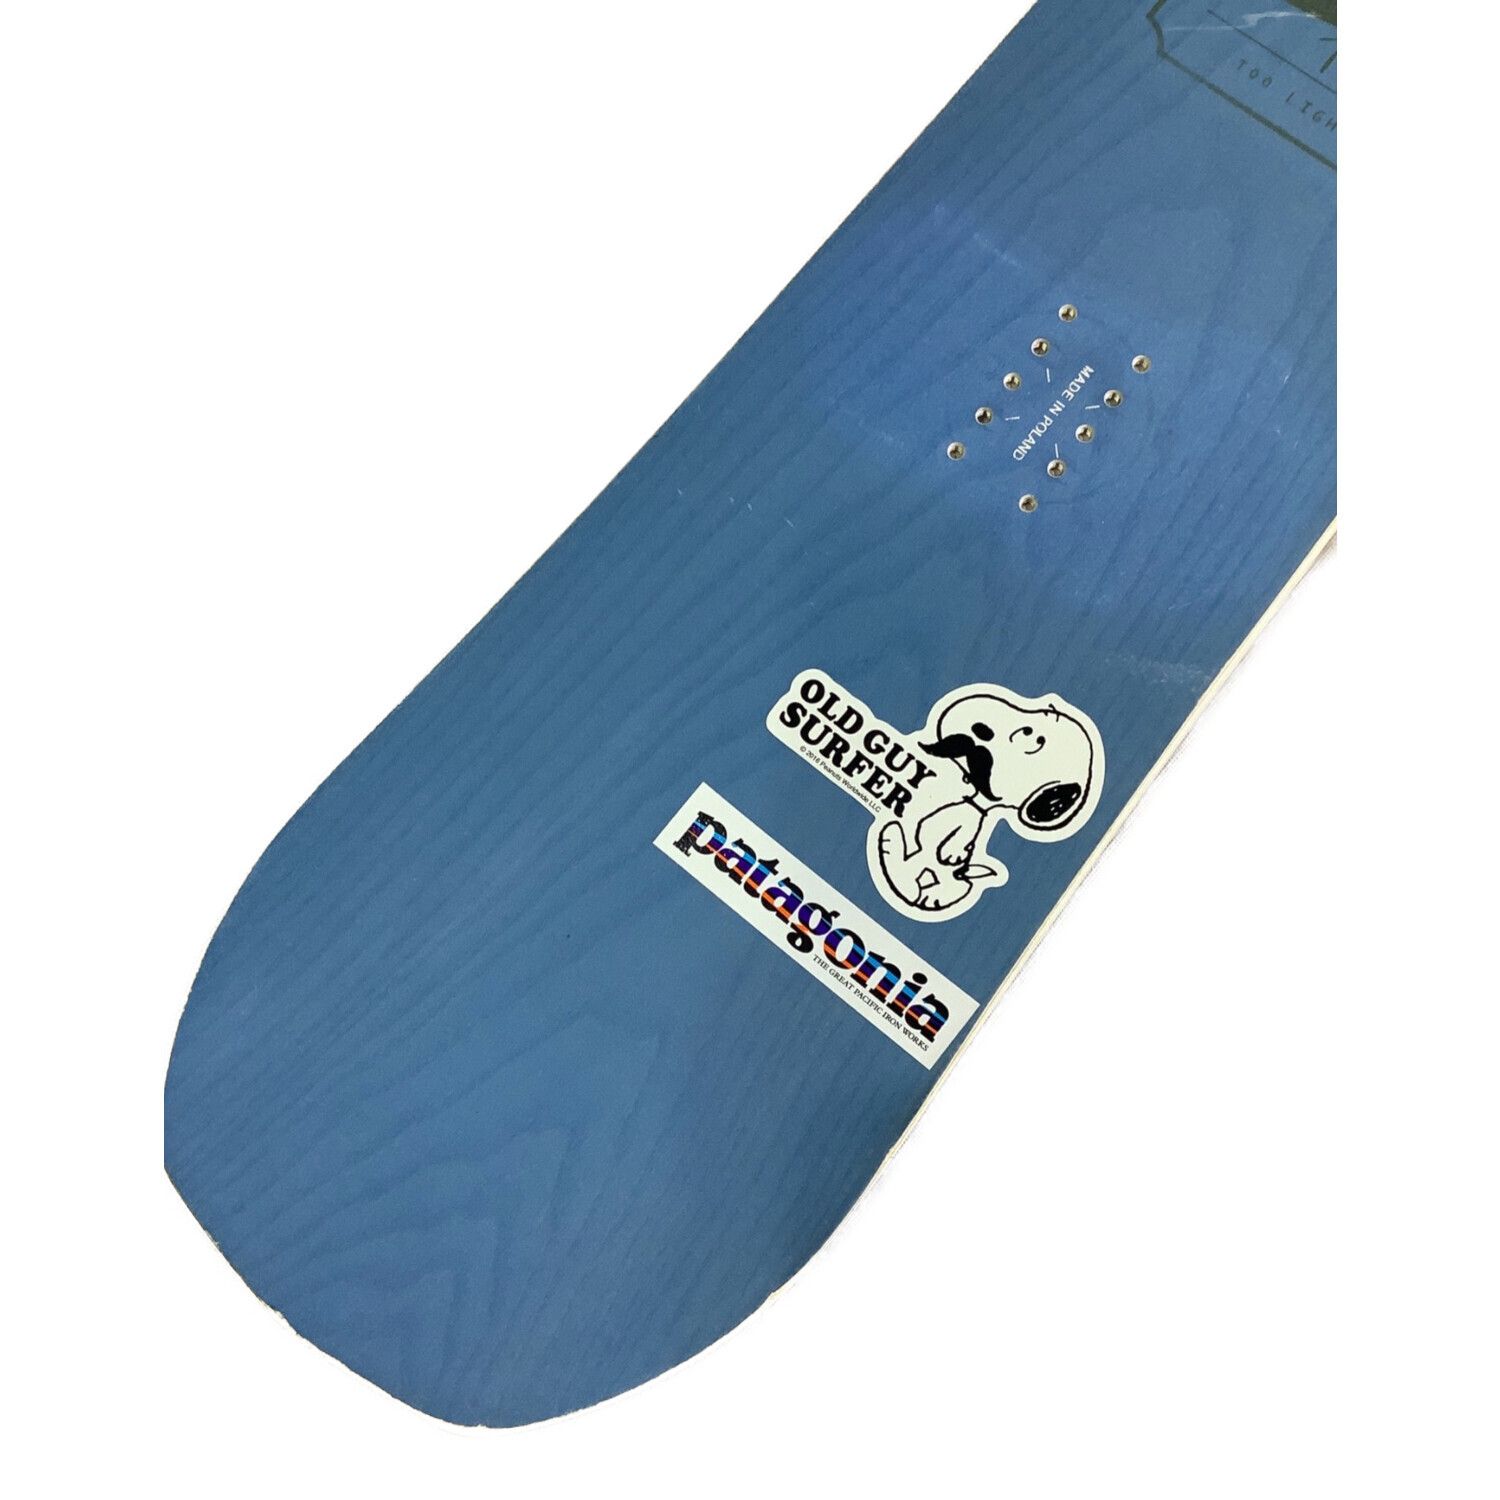 FANATIC (ファナティック) スノーボード 156cm ブルー 18-19 2x4 